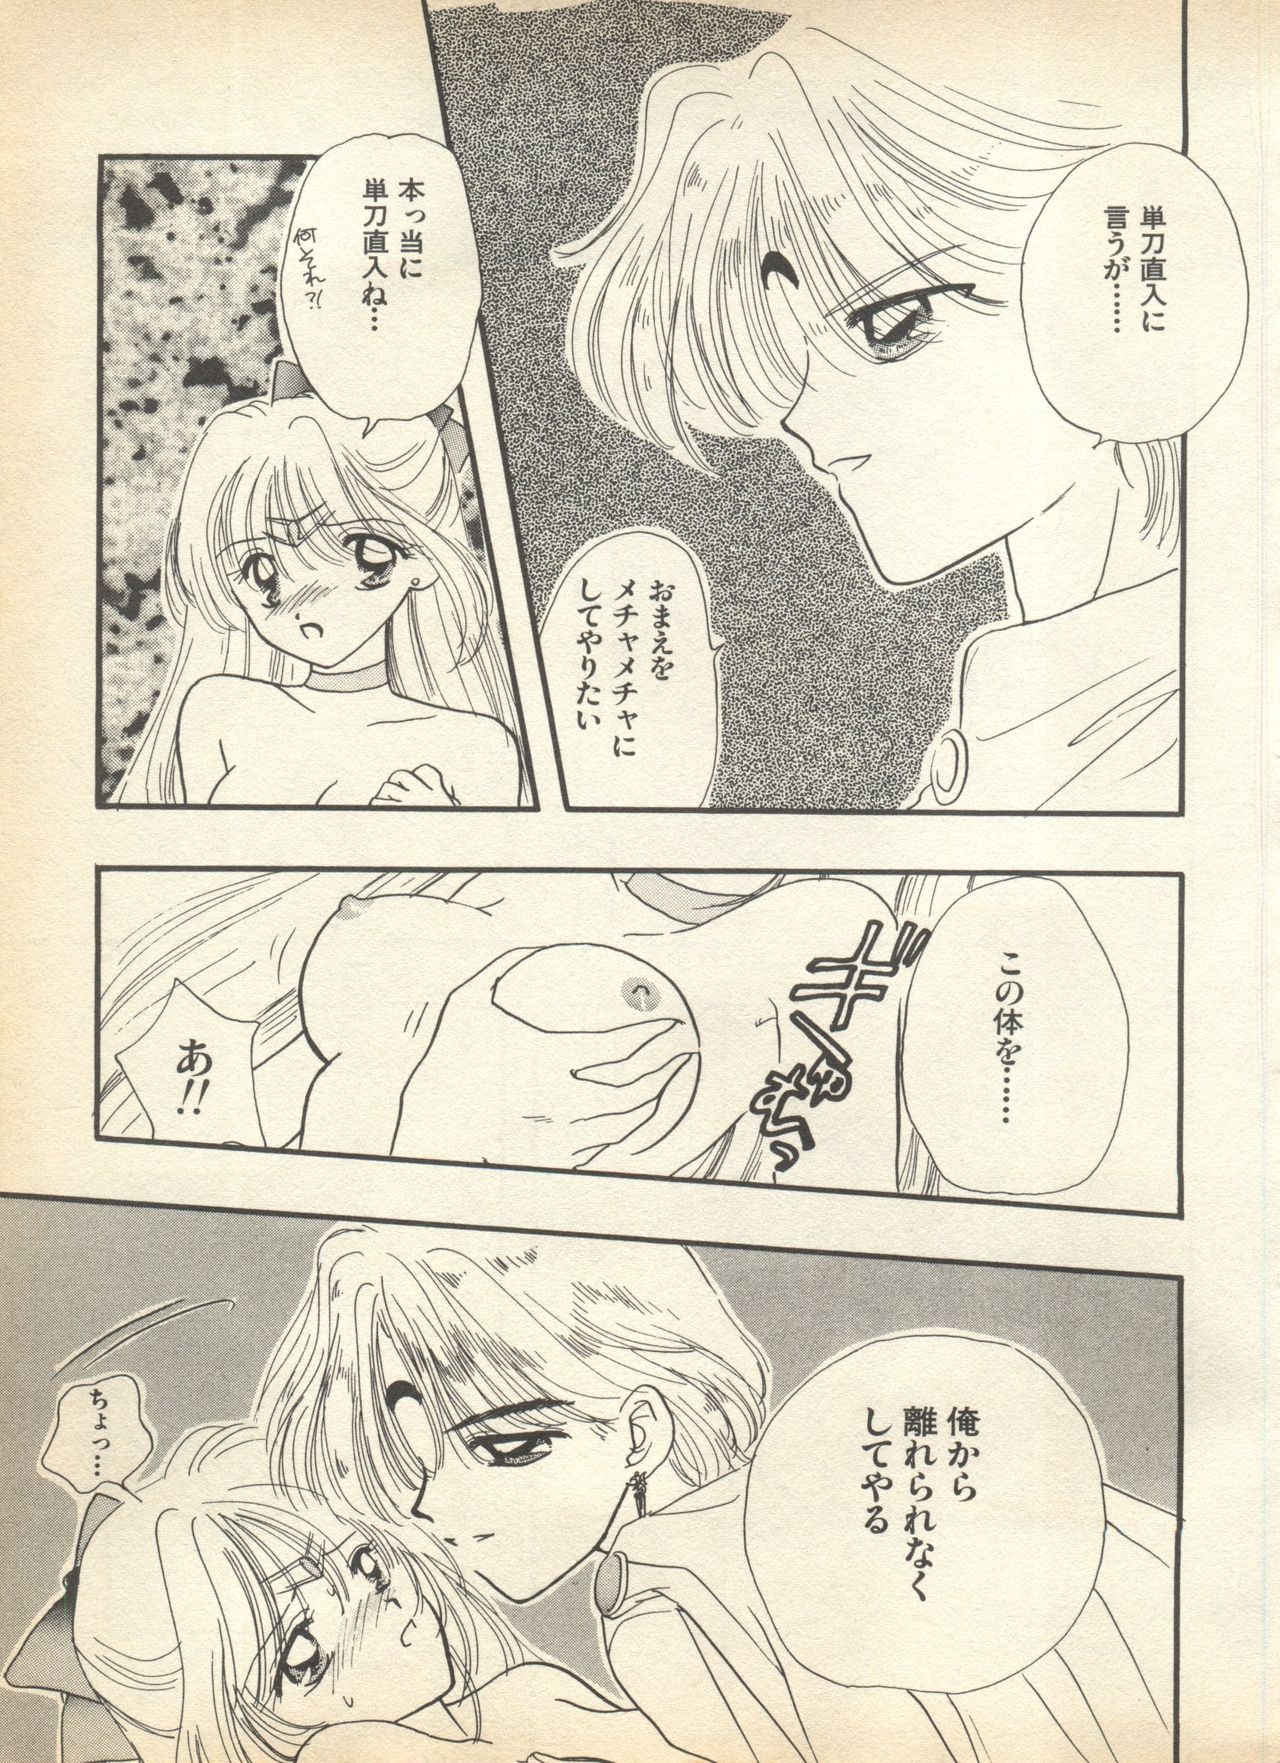 [Anthology] Lunatic Party 7 (Bishoujo Senshi Sailor Moon) 164